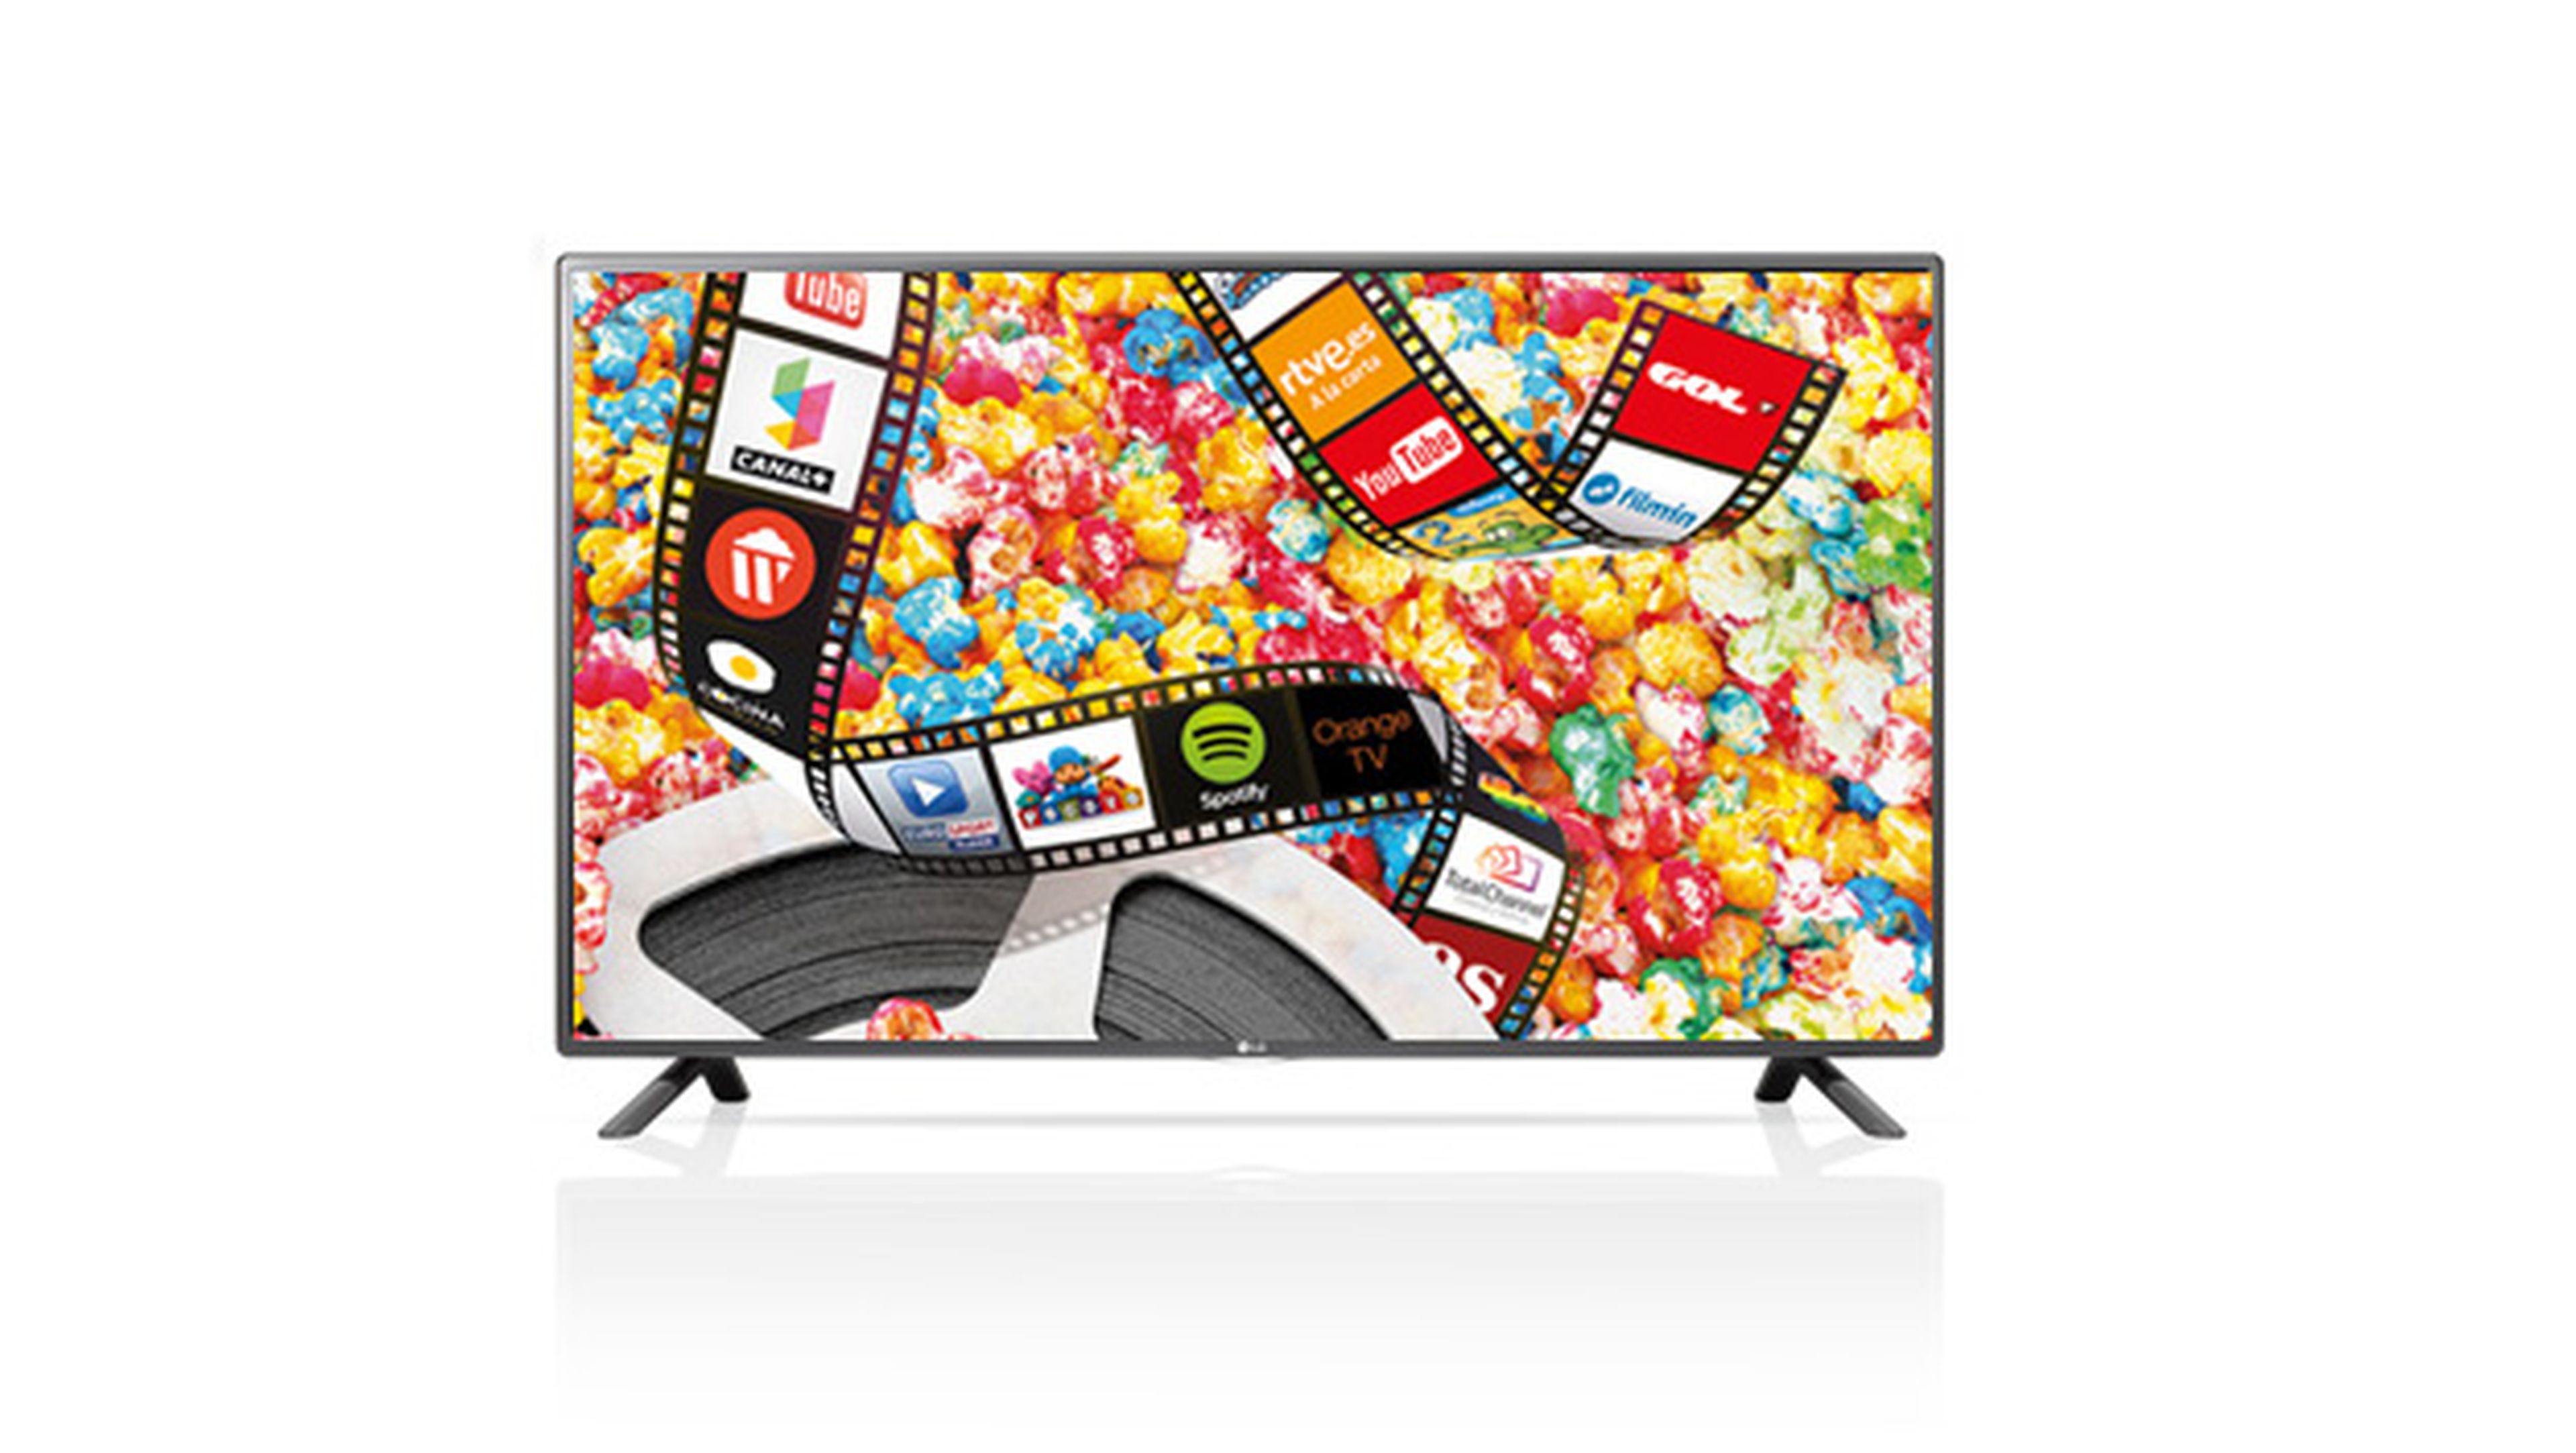 LG 32LF5800 smart TV de 32"